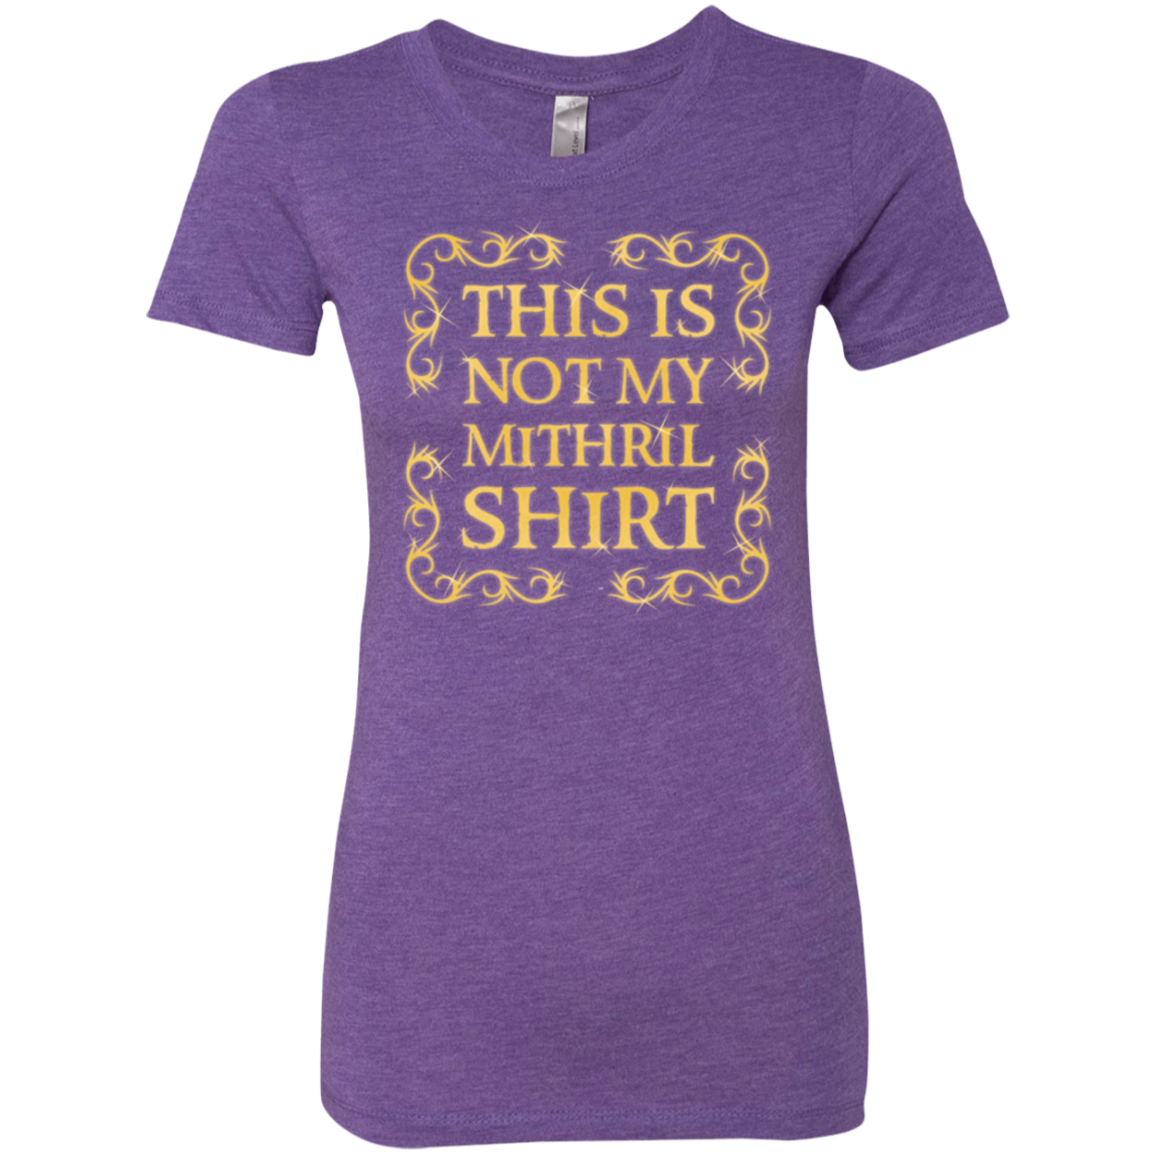 Not my shirt Women's Triblend T-Shirt